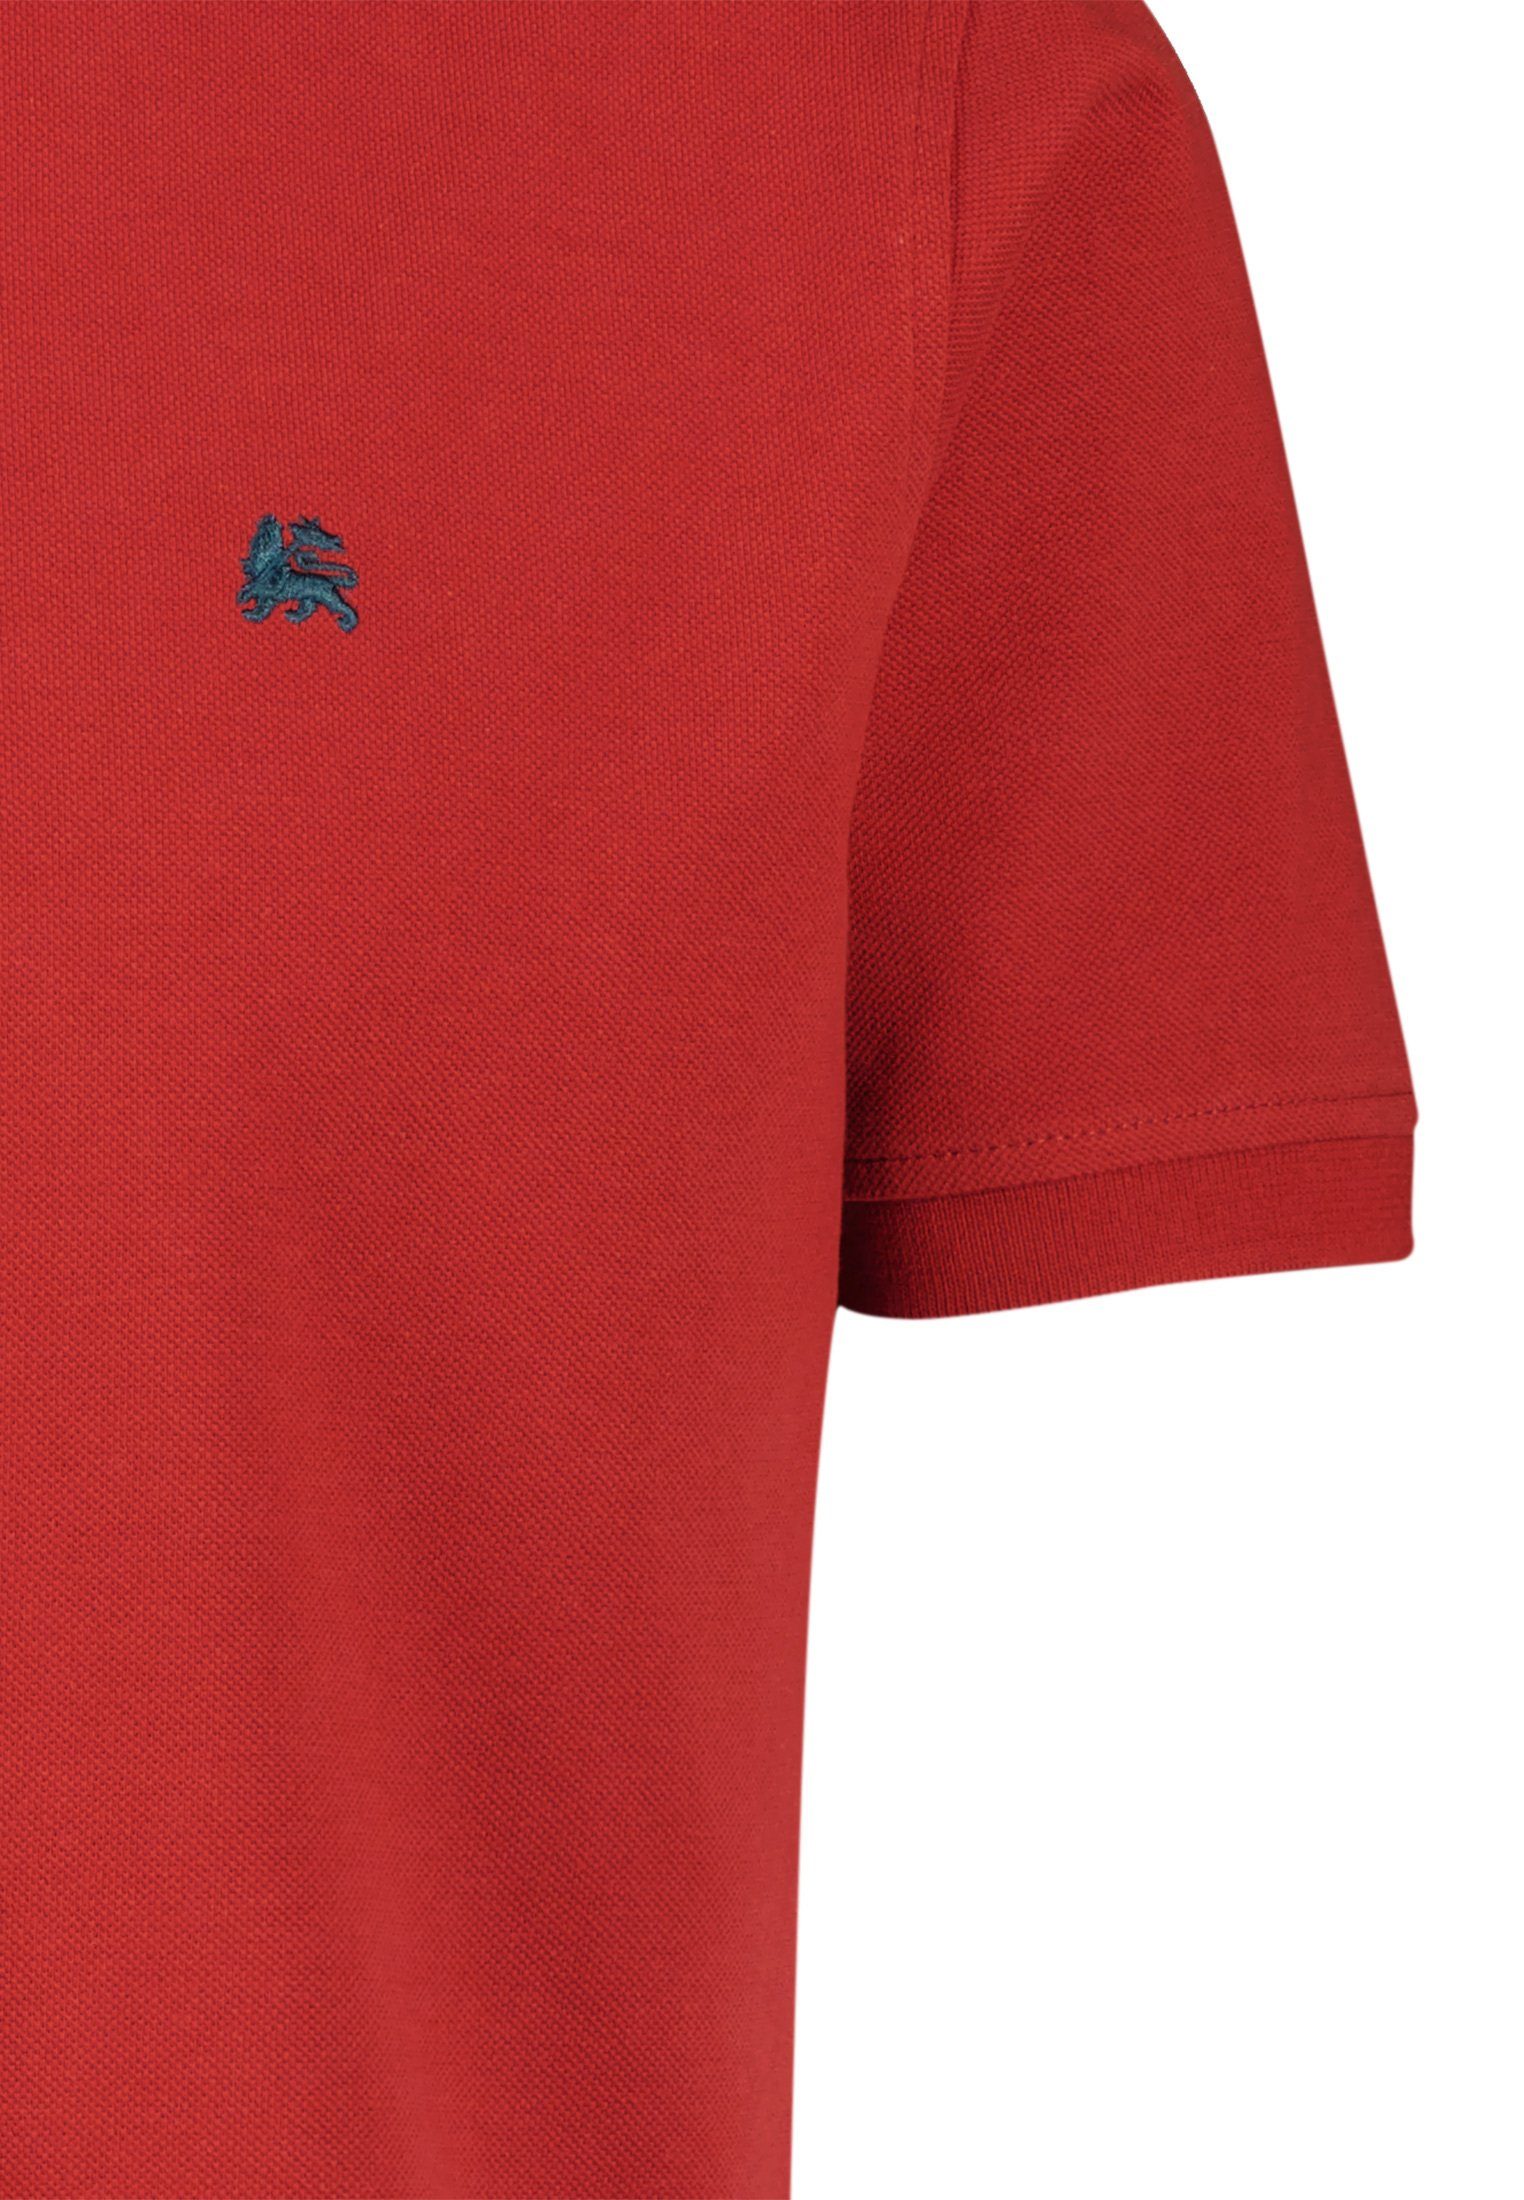 LERROS hochwertiger LERROS Poloshirt RED BCI Piqué-Baumwollqualität, in Poloshirt RUSTY